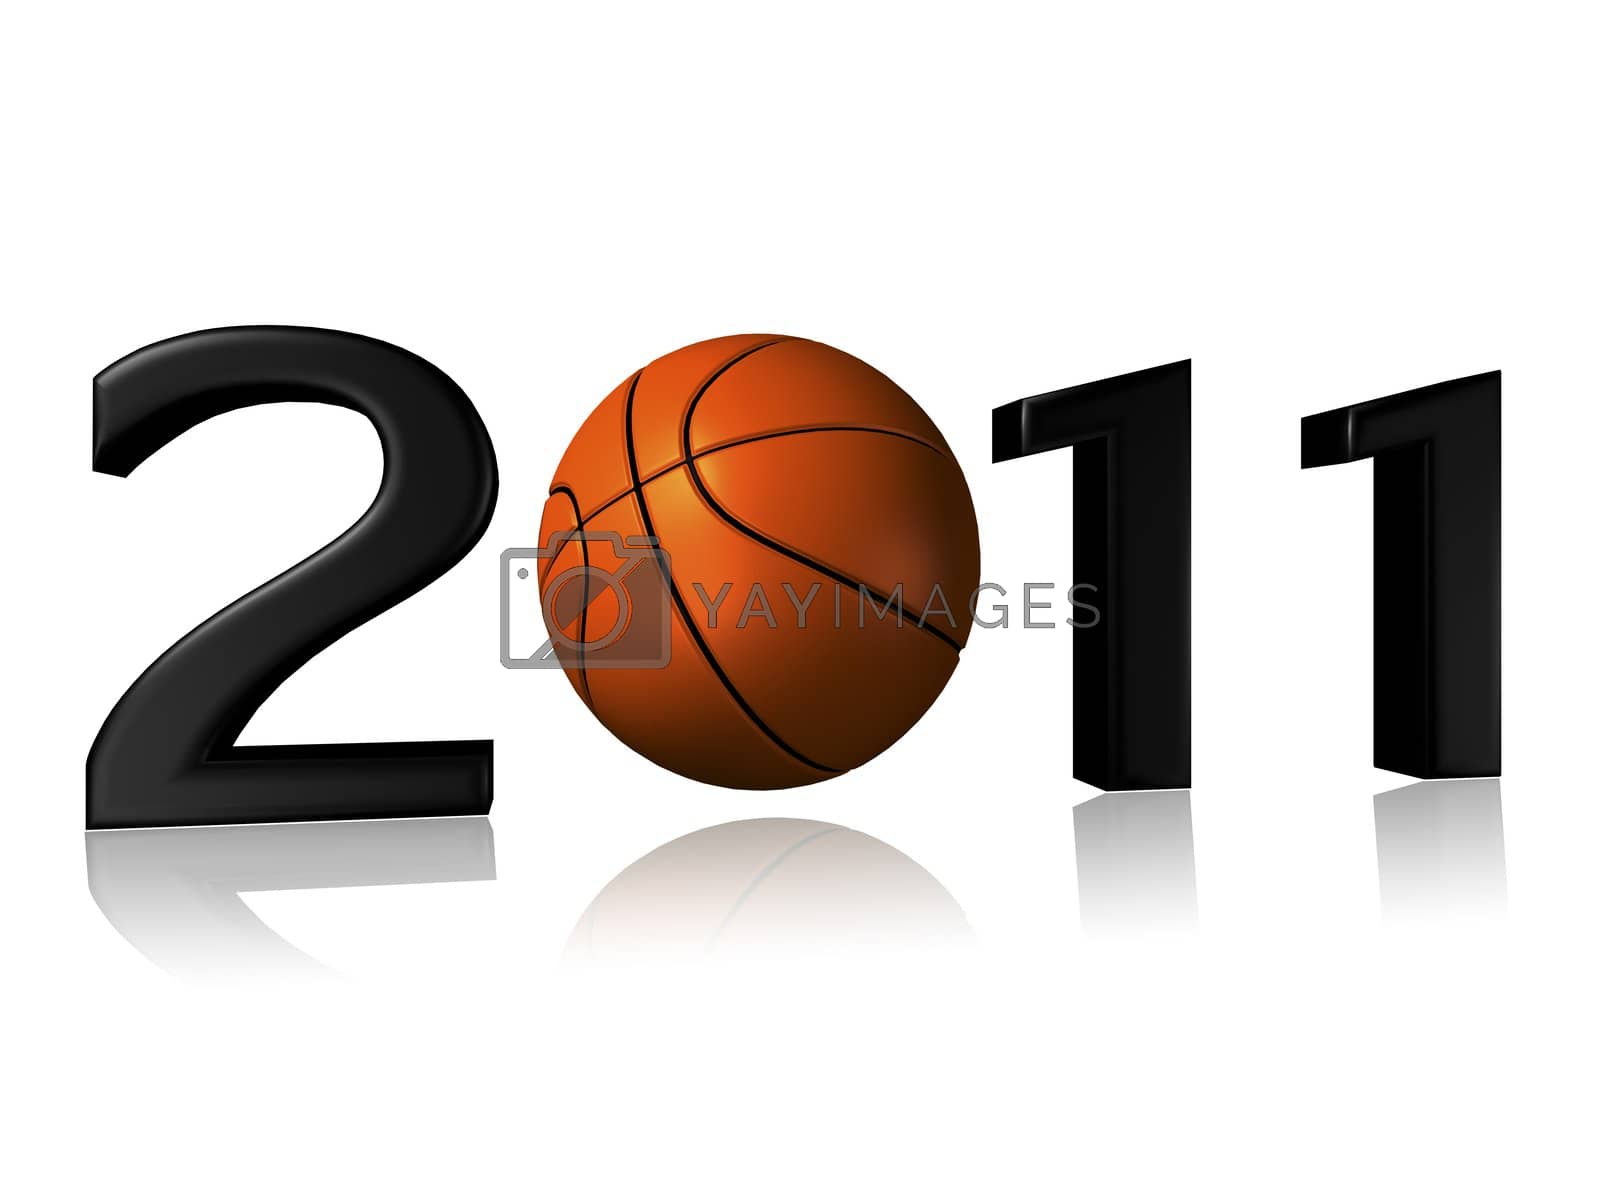 Royalty free image of Big 2011 basketball logo by shkyo30